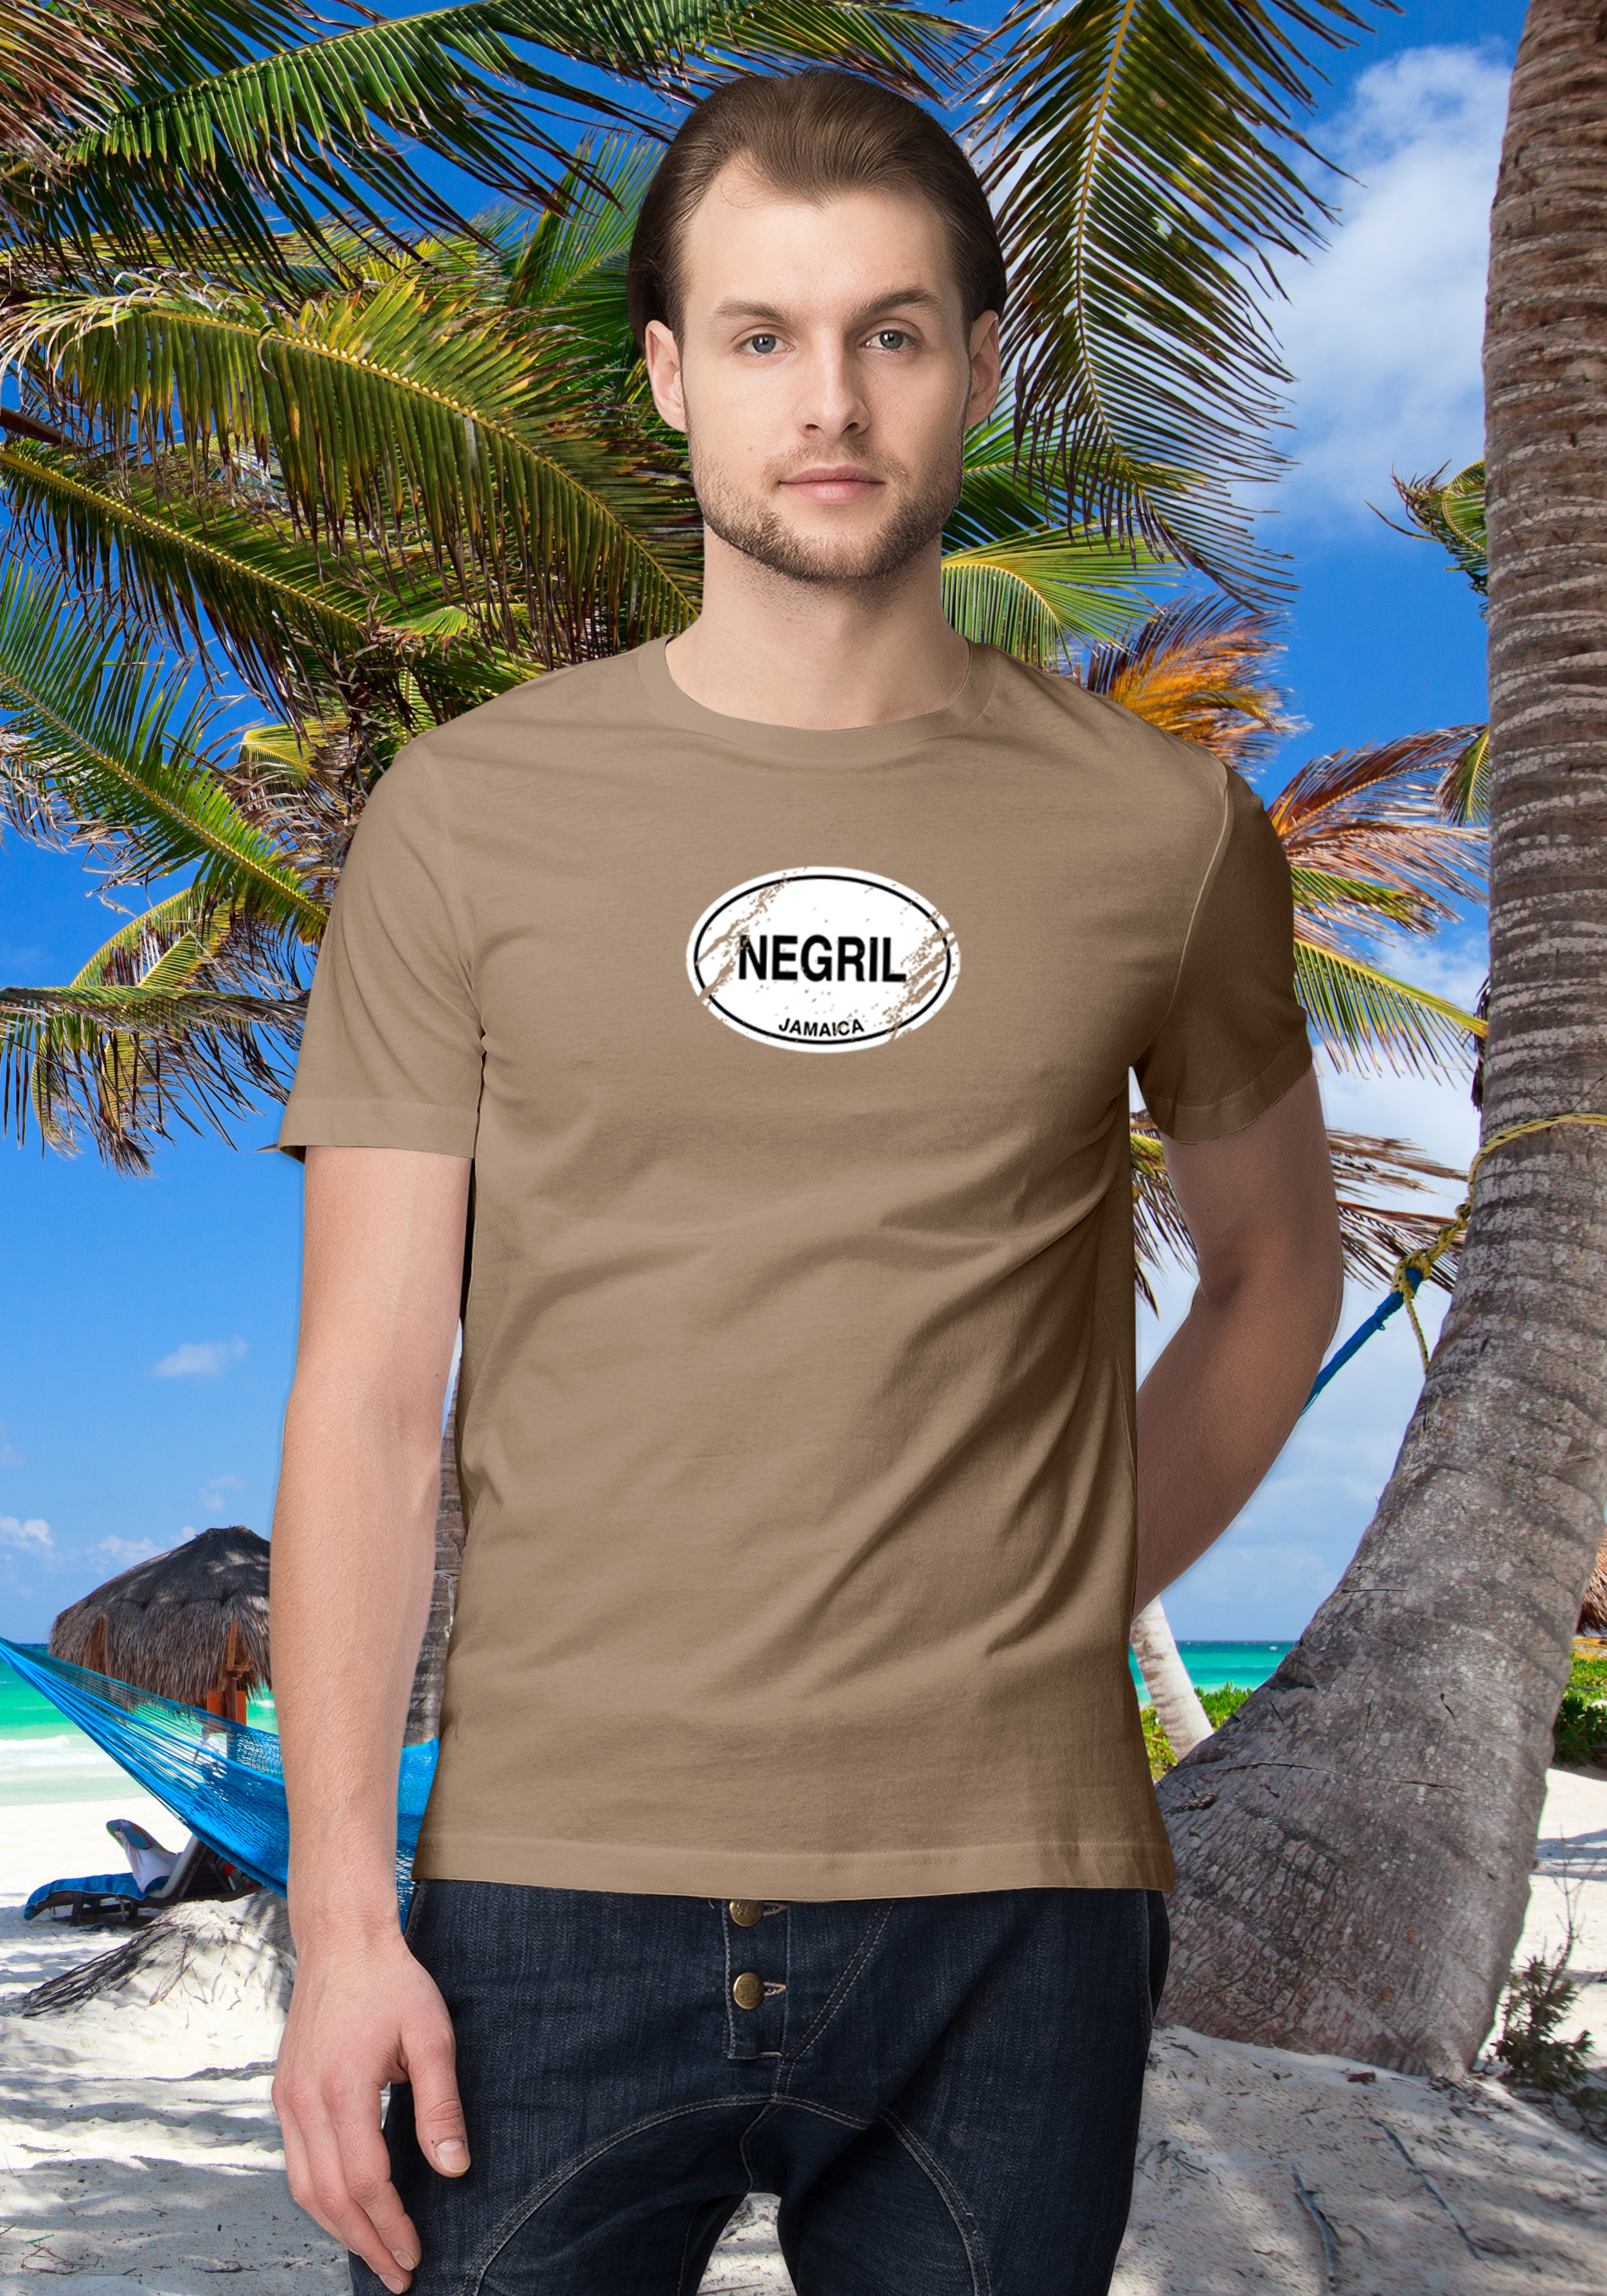 Negril Men's Classic T-Shirt Souvenirs - My Destination Location